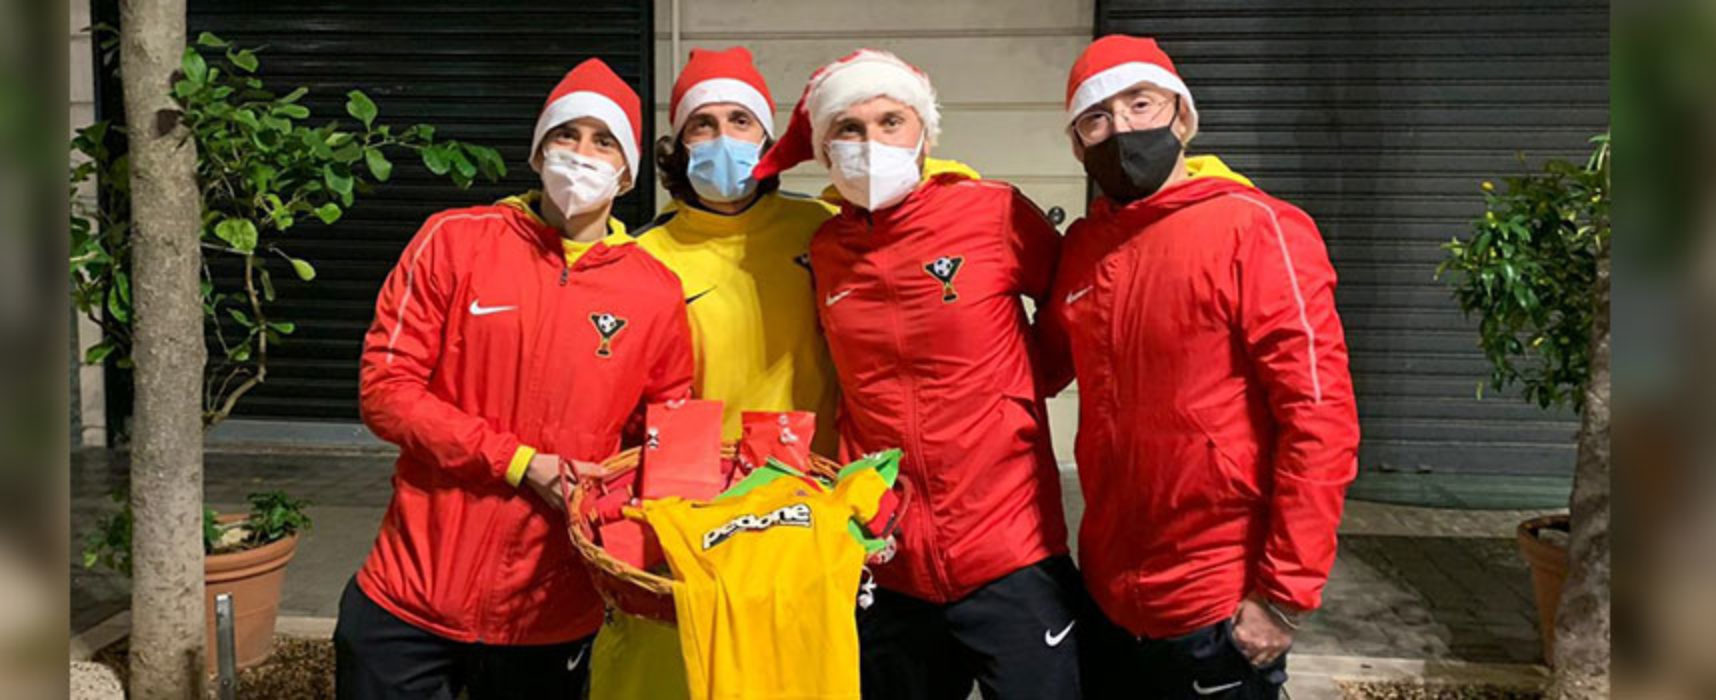 La scuola calcio YAB omaggia i suoi piccoli calciatori per il Natale / FOTO